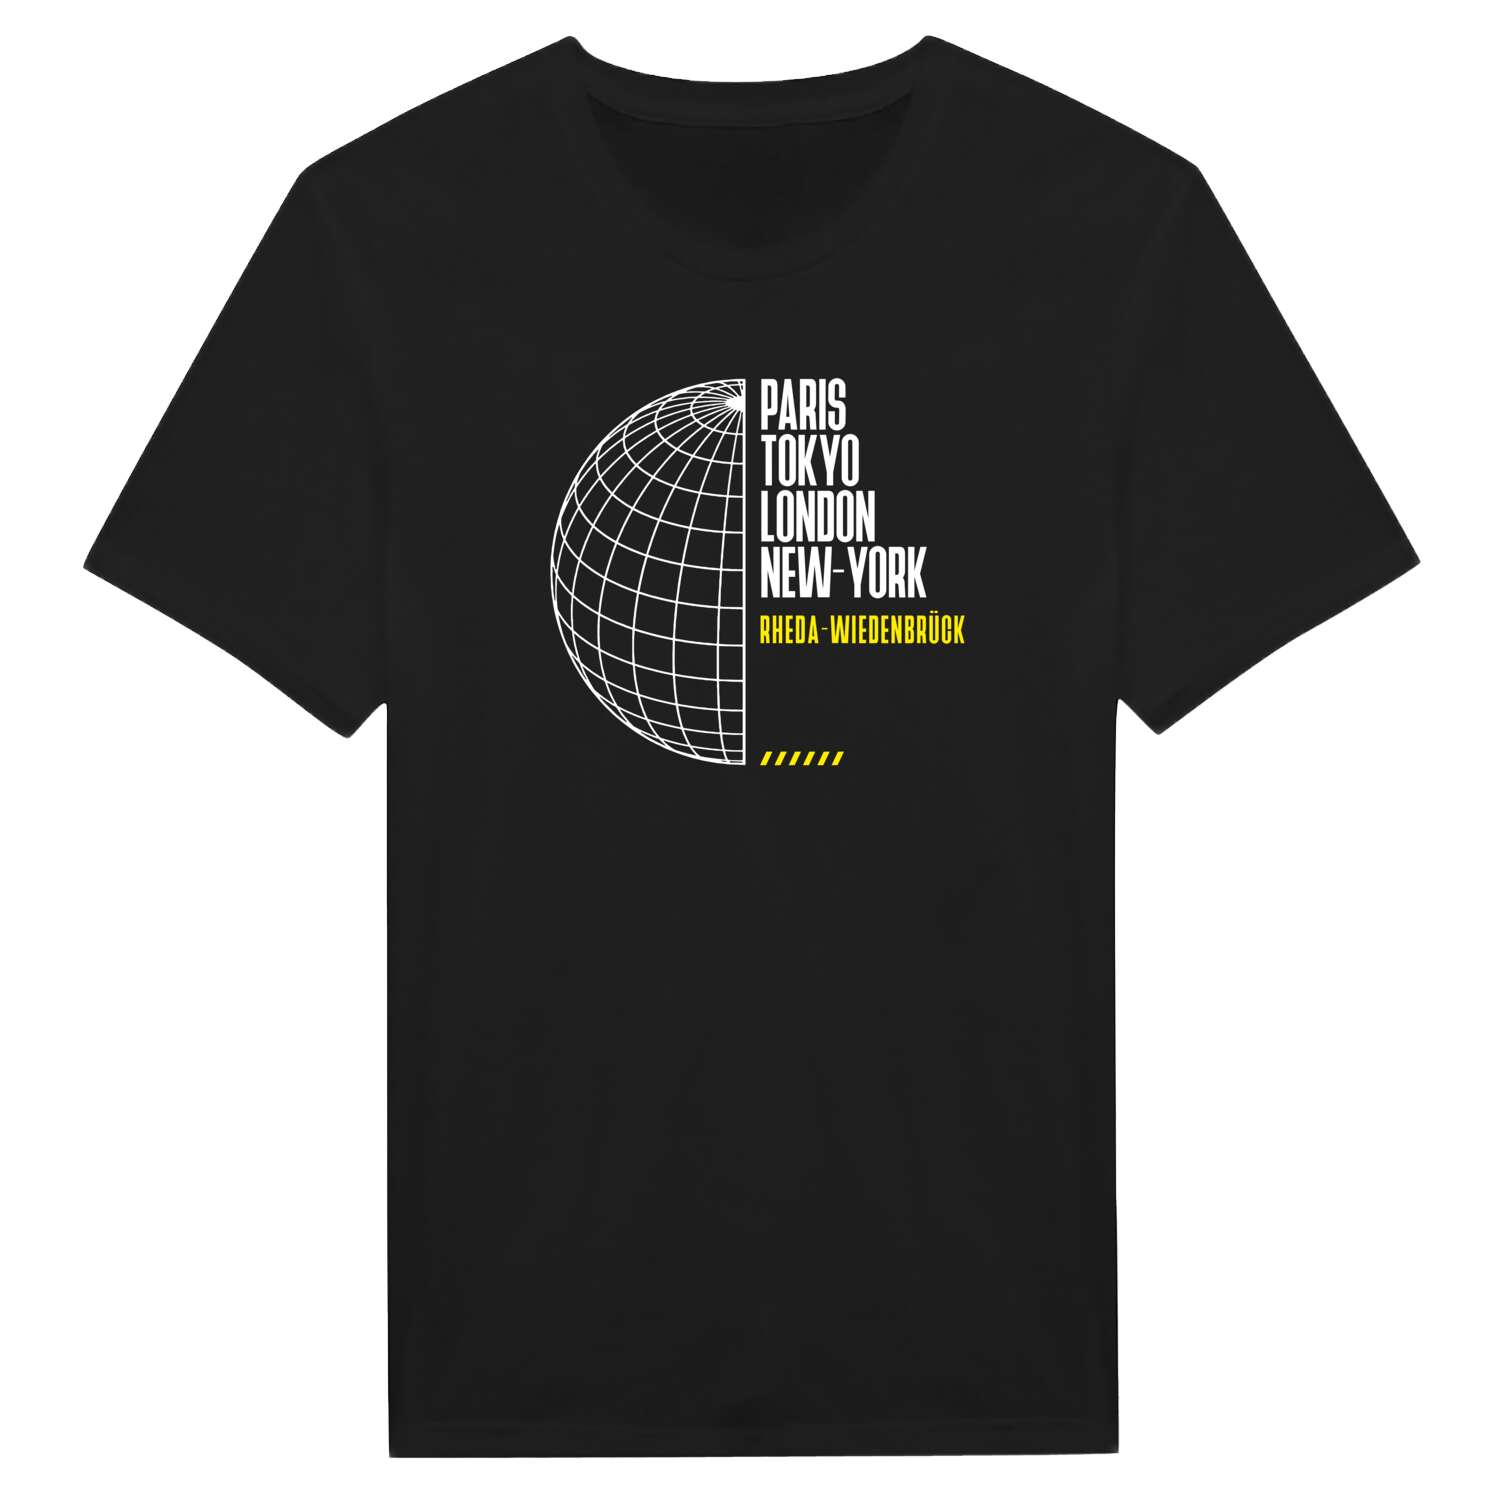 Rheda-Wiedenbrück T-Shirt »Paris Tokyo London«